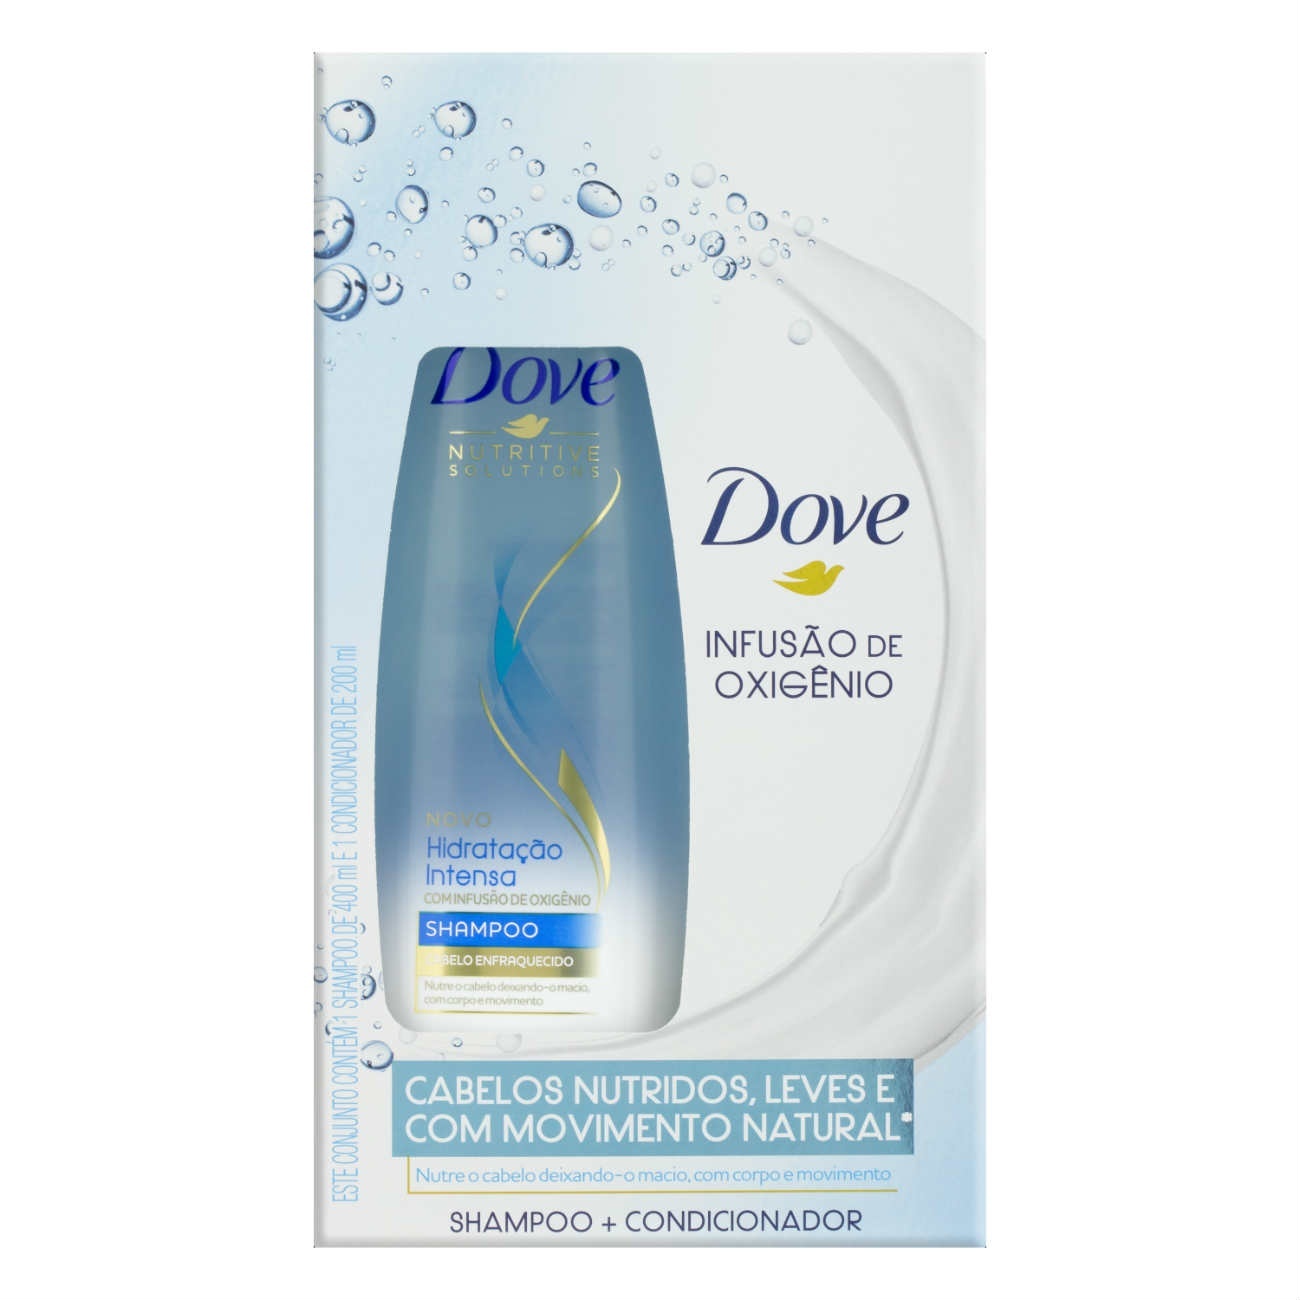 Oferta Shampoo Dove Hidratação Intensa 400ml + Condicionador 200ml